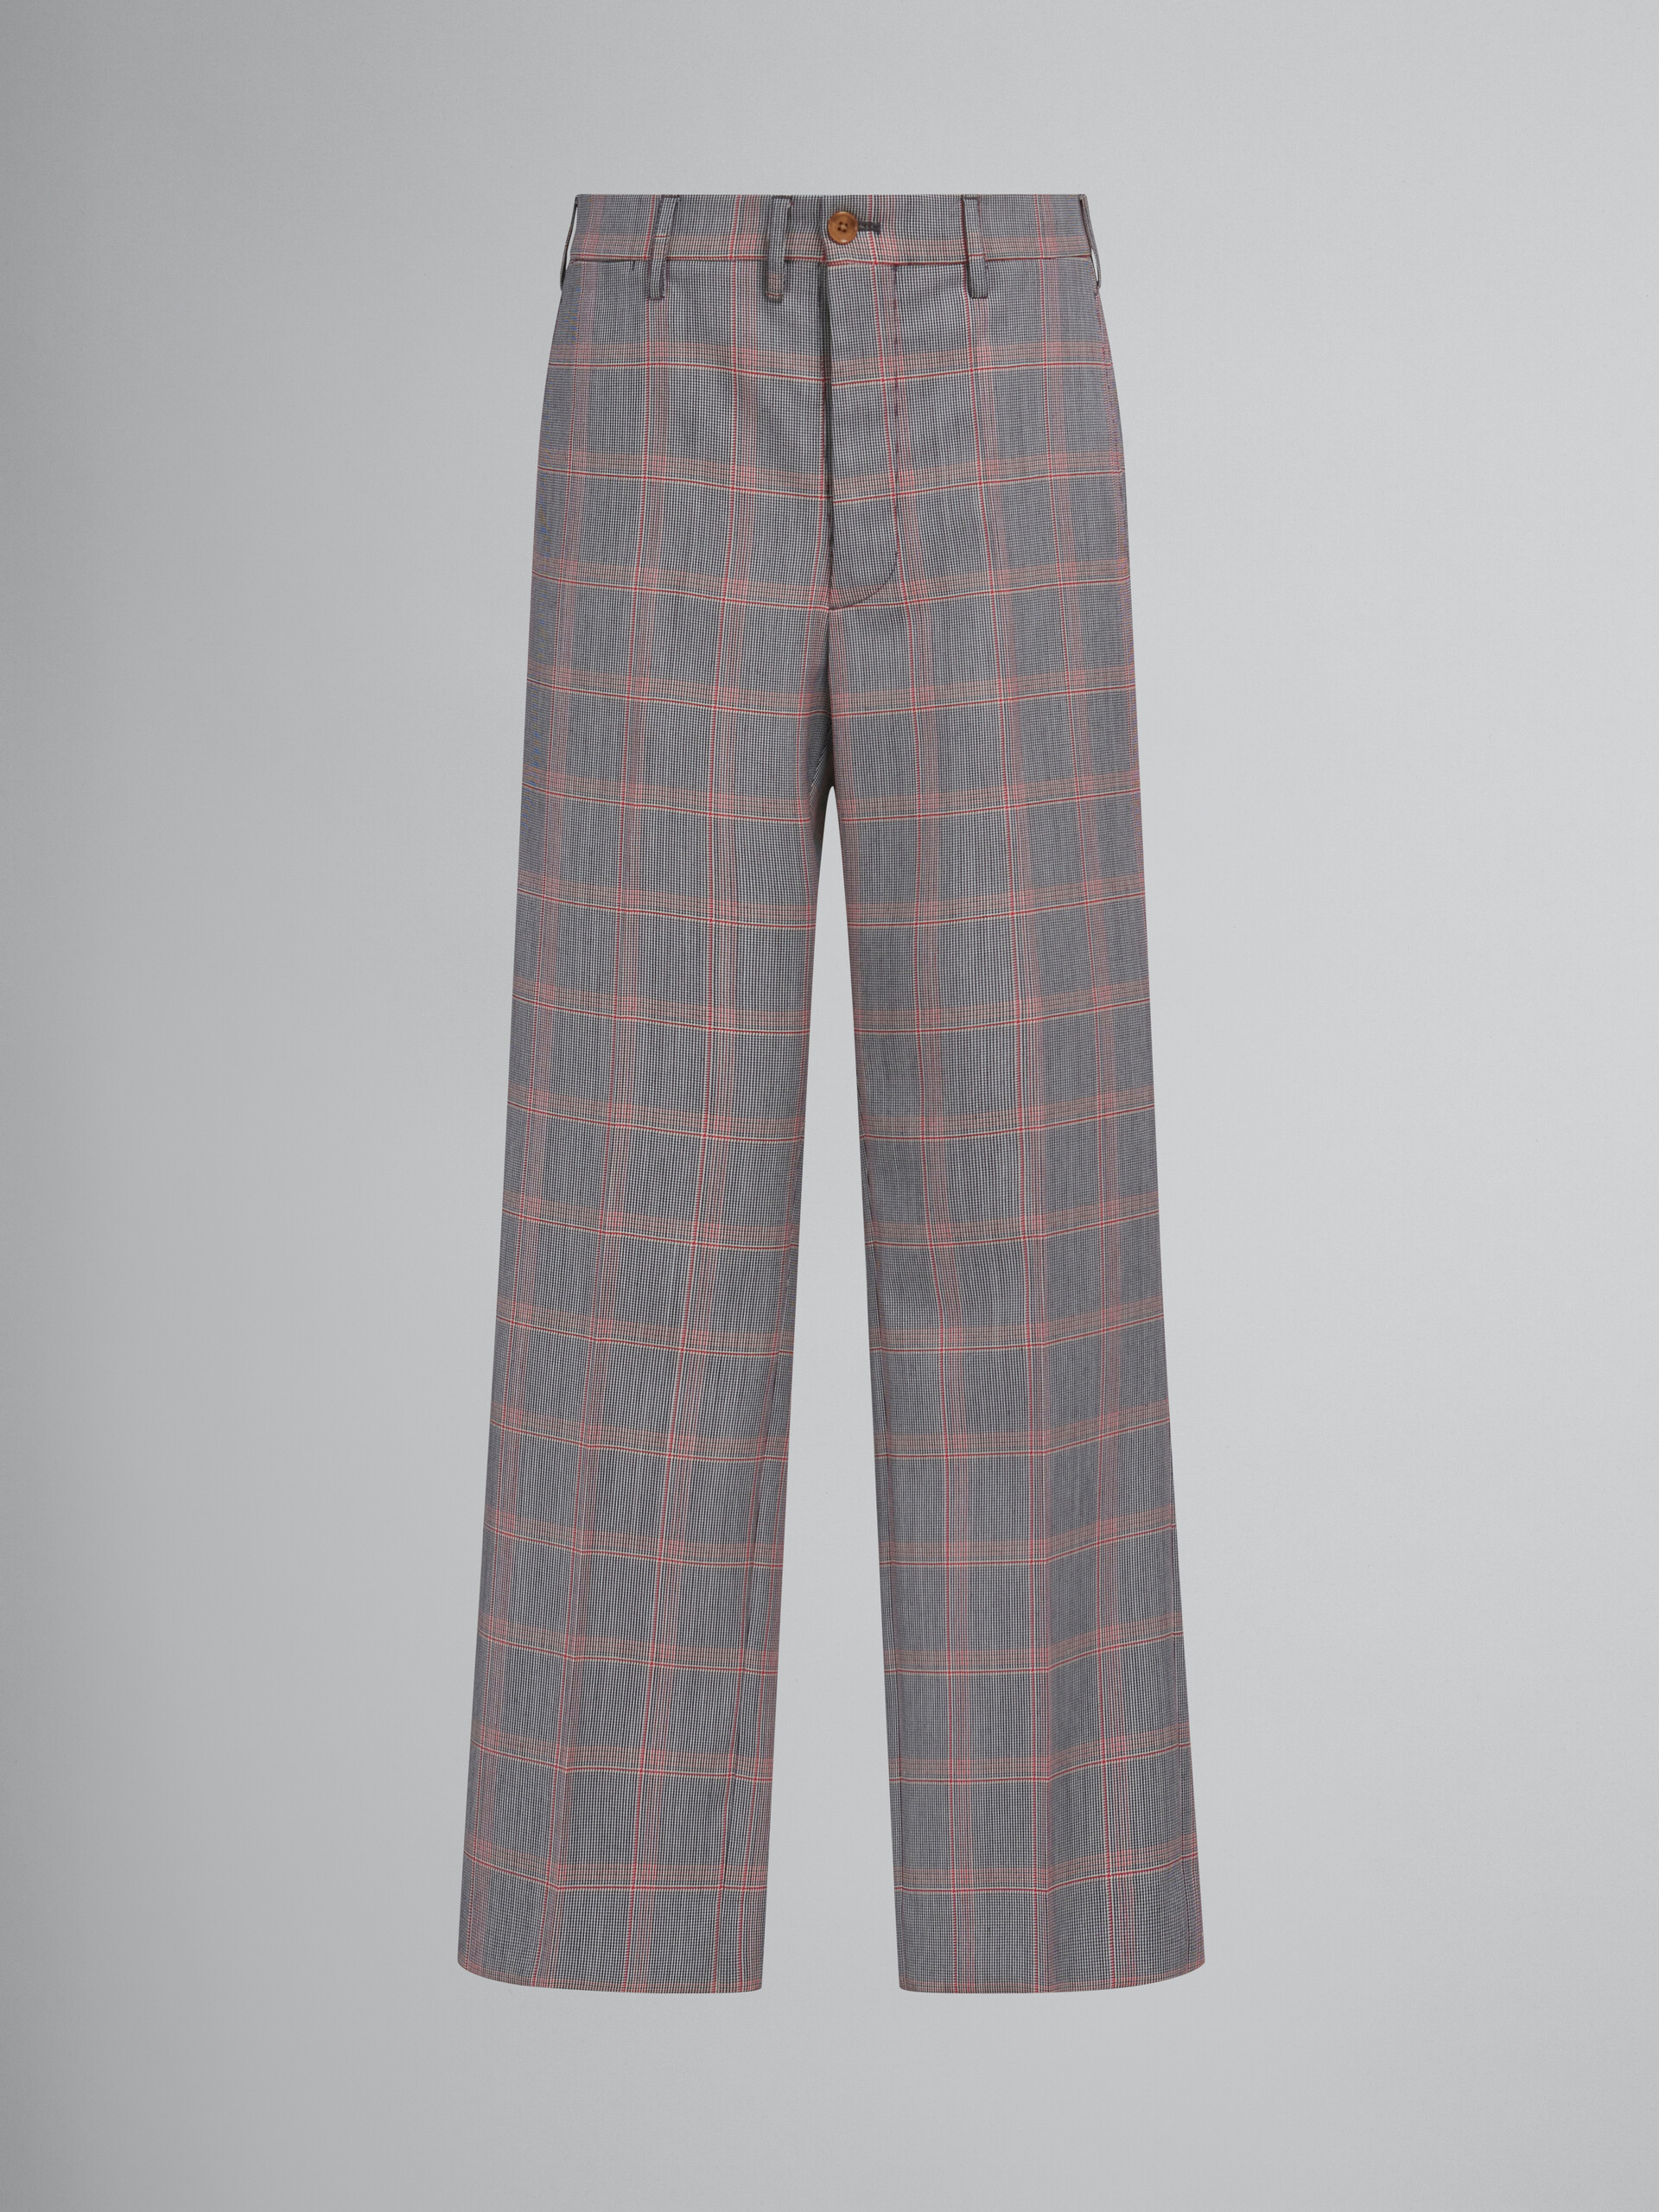 Pantaloni chino in lana tecnica con motivo check arancione - Pantaloni - Image 1